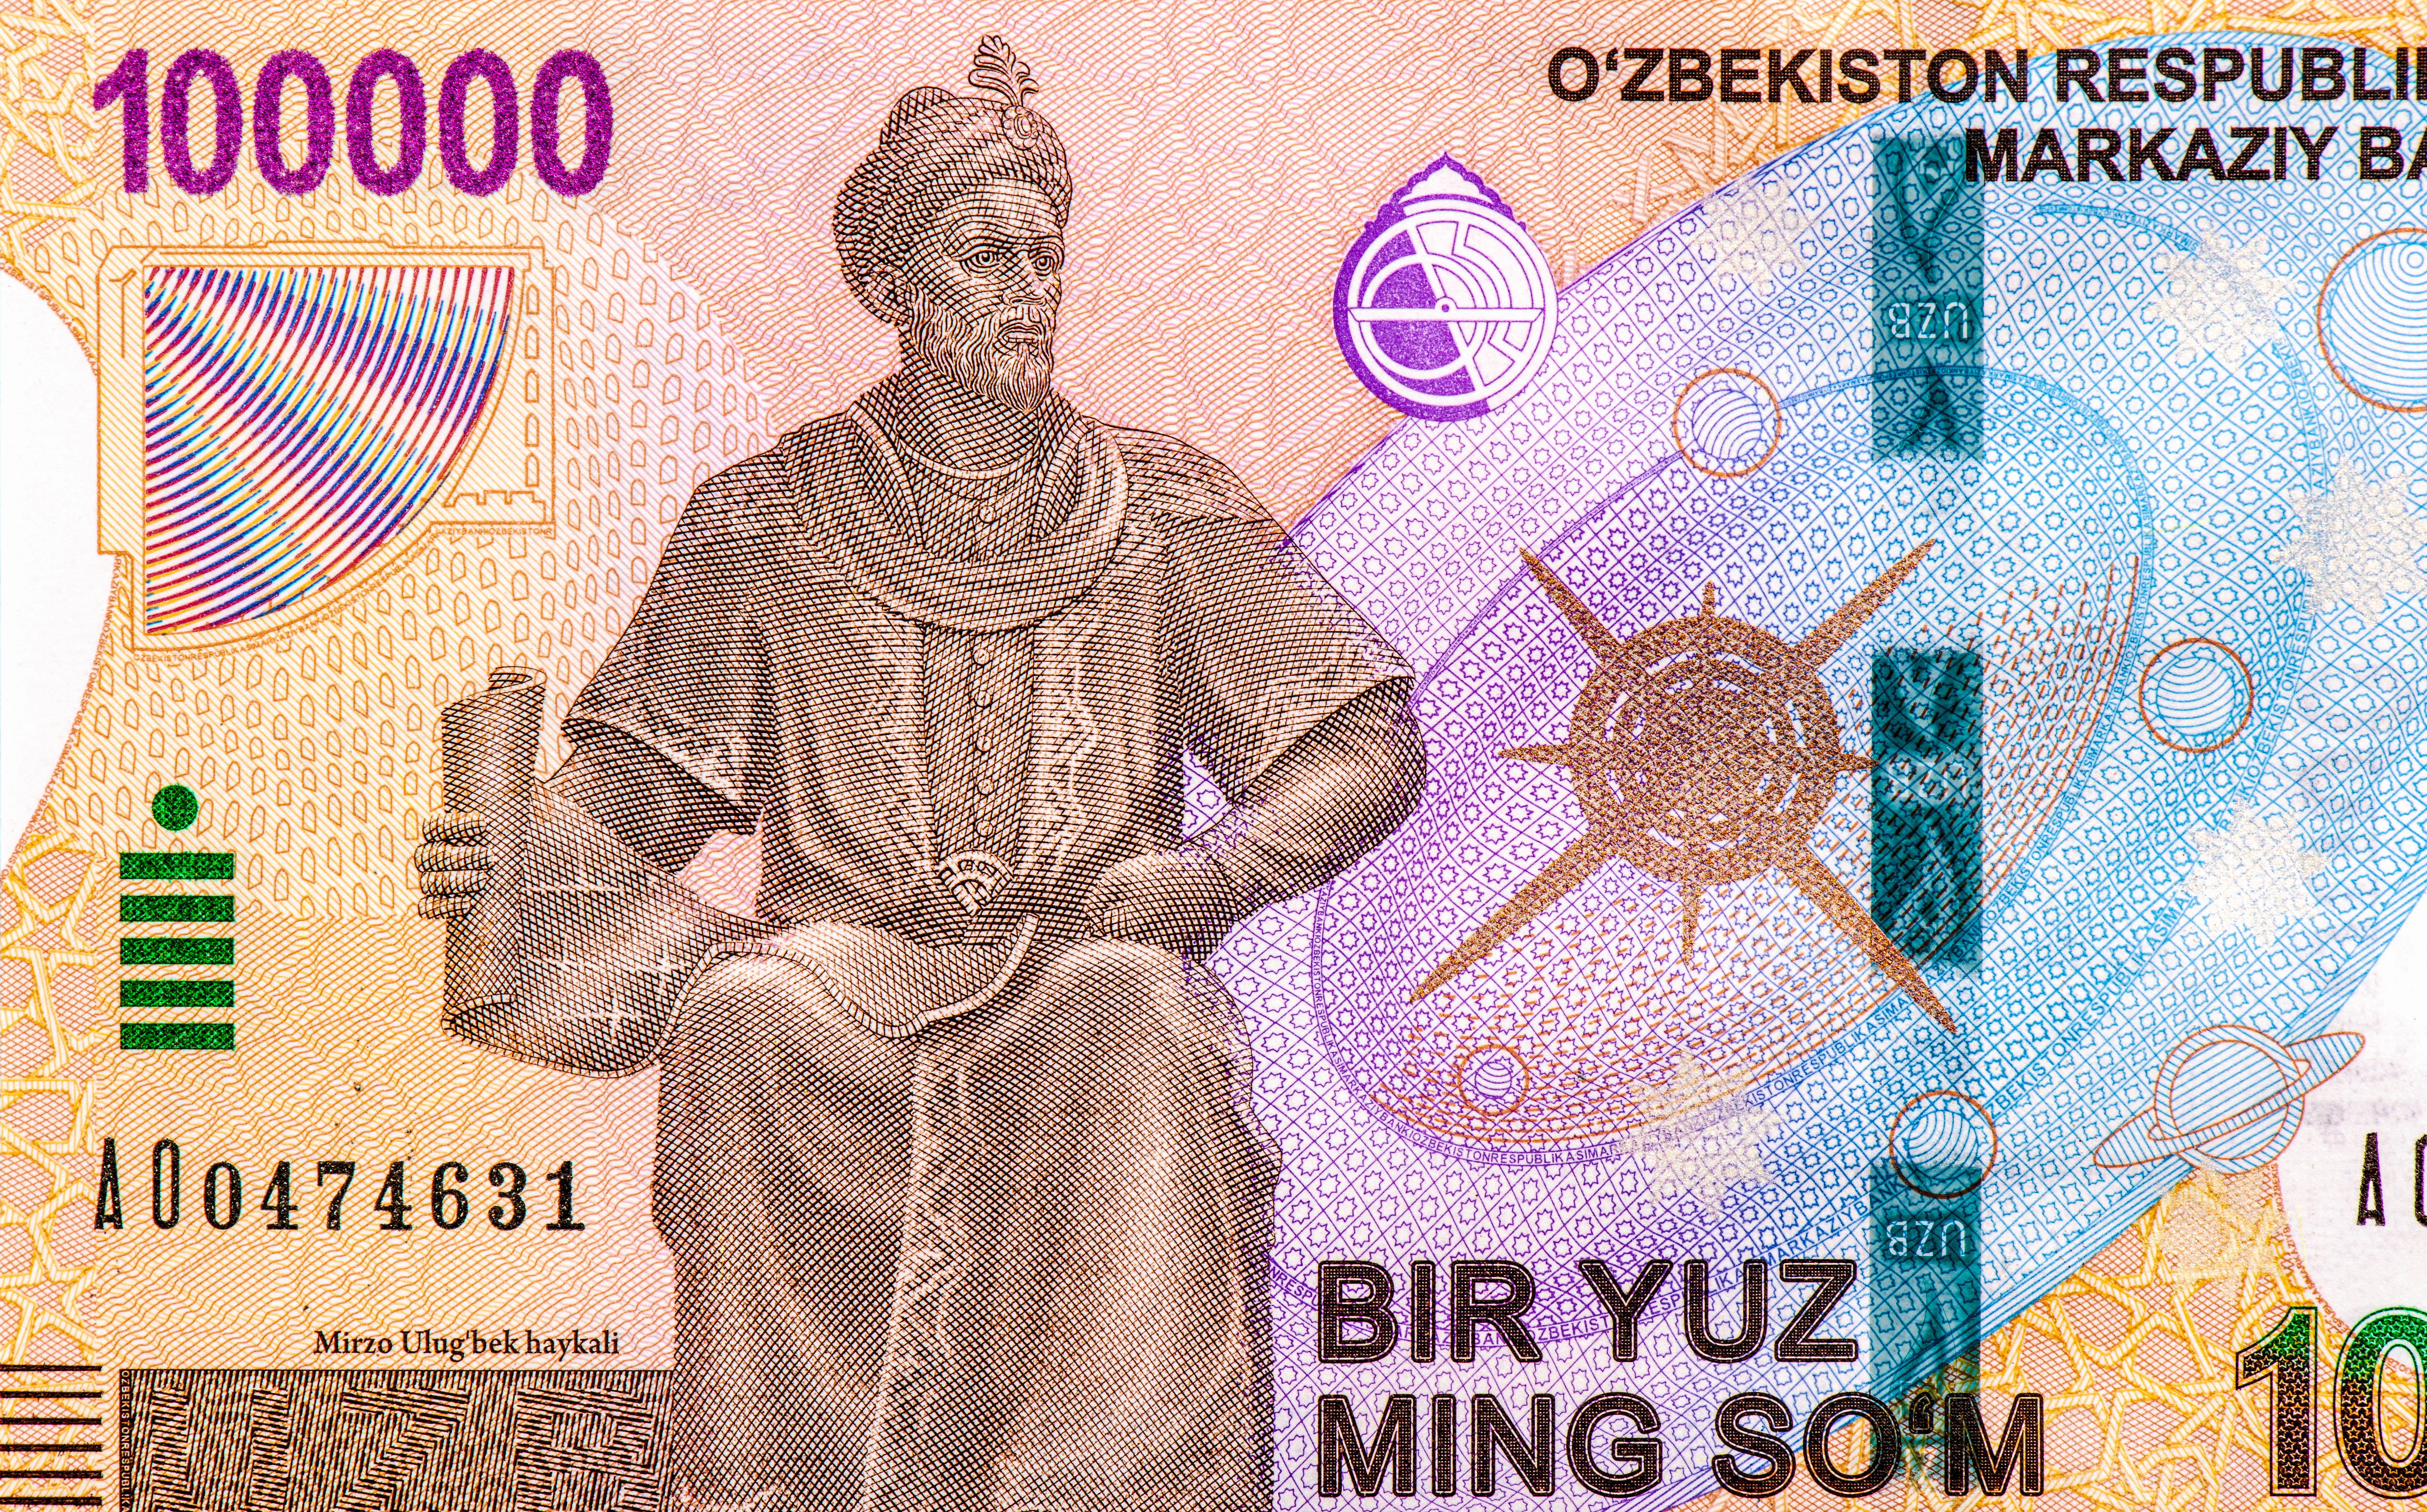 Ulugh Bek's Portrait adorns Uzbekistan's 100000 so'm note